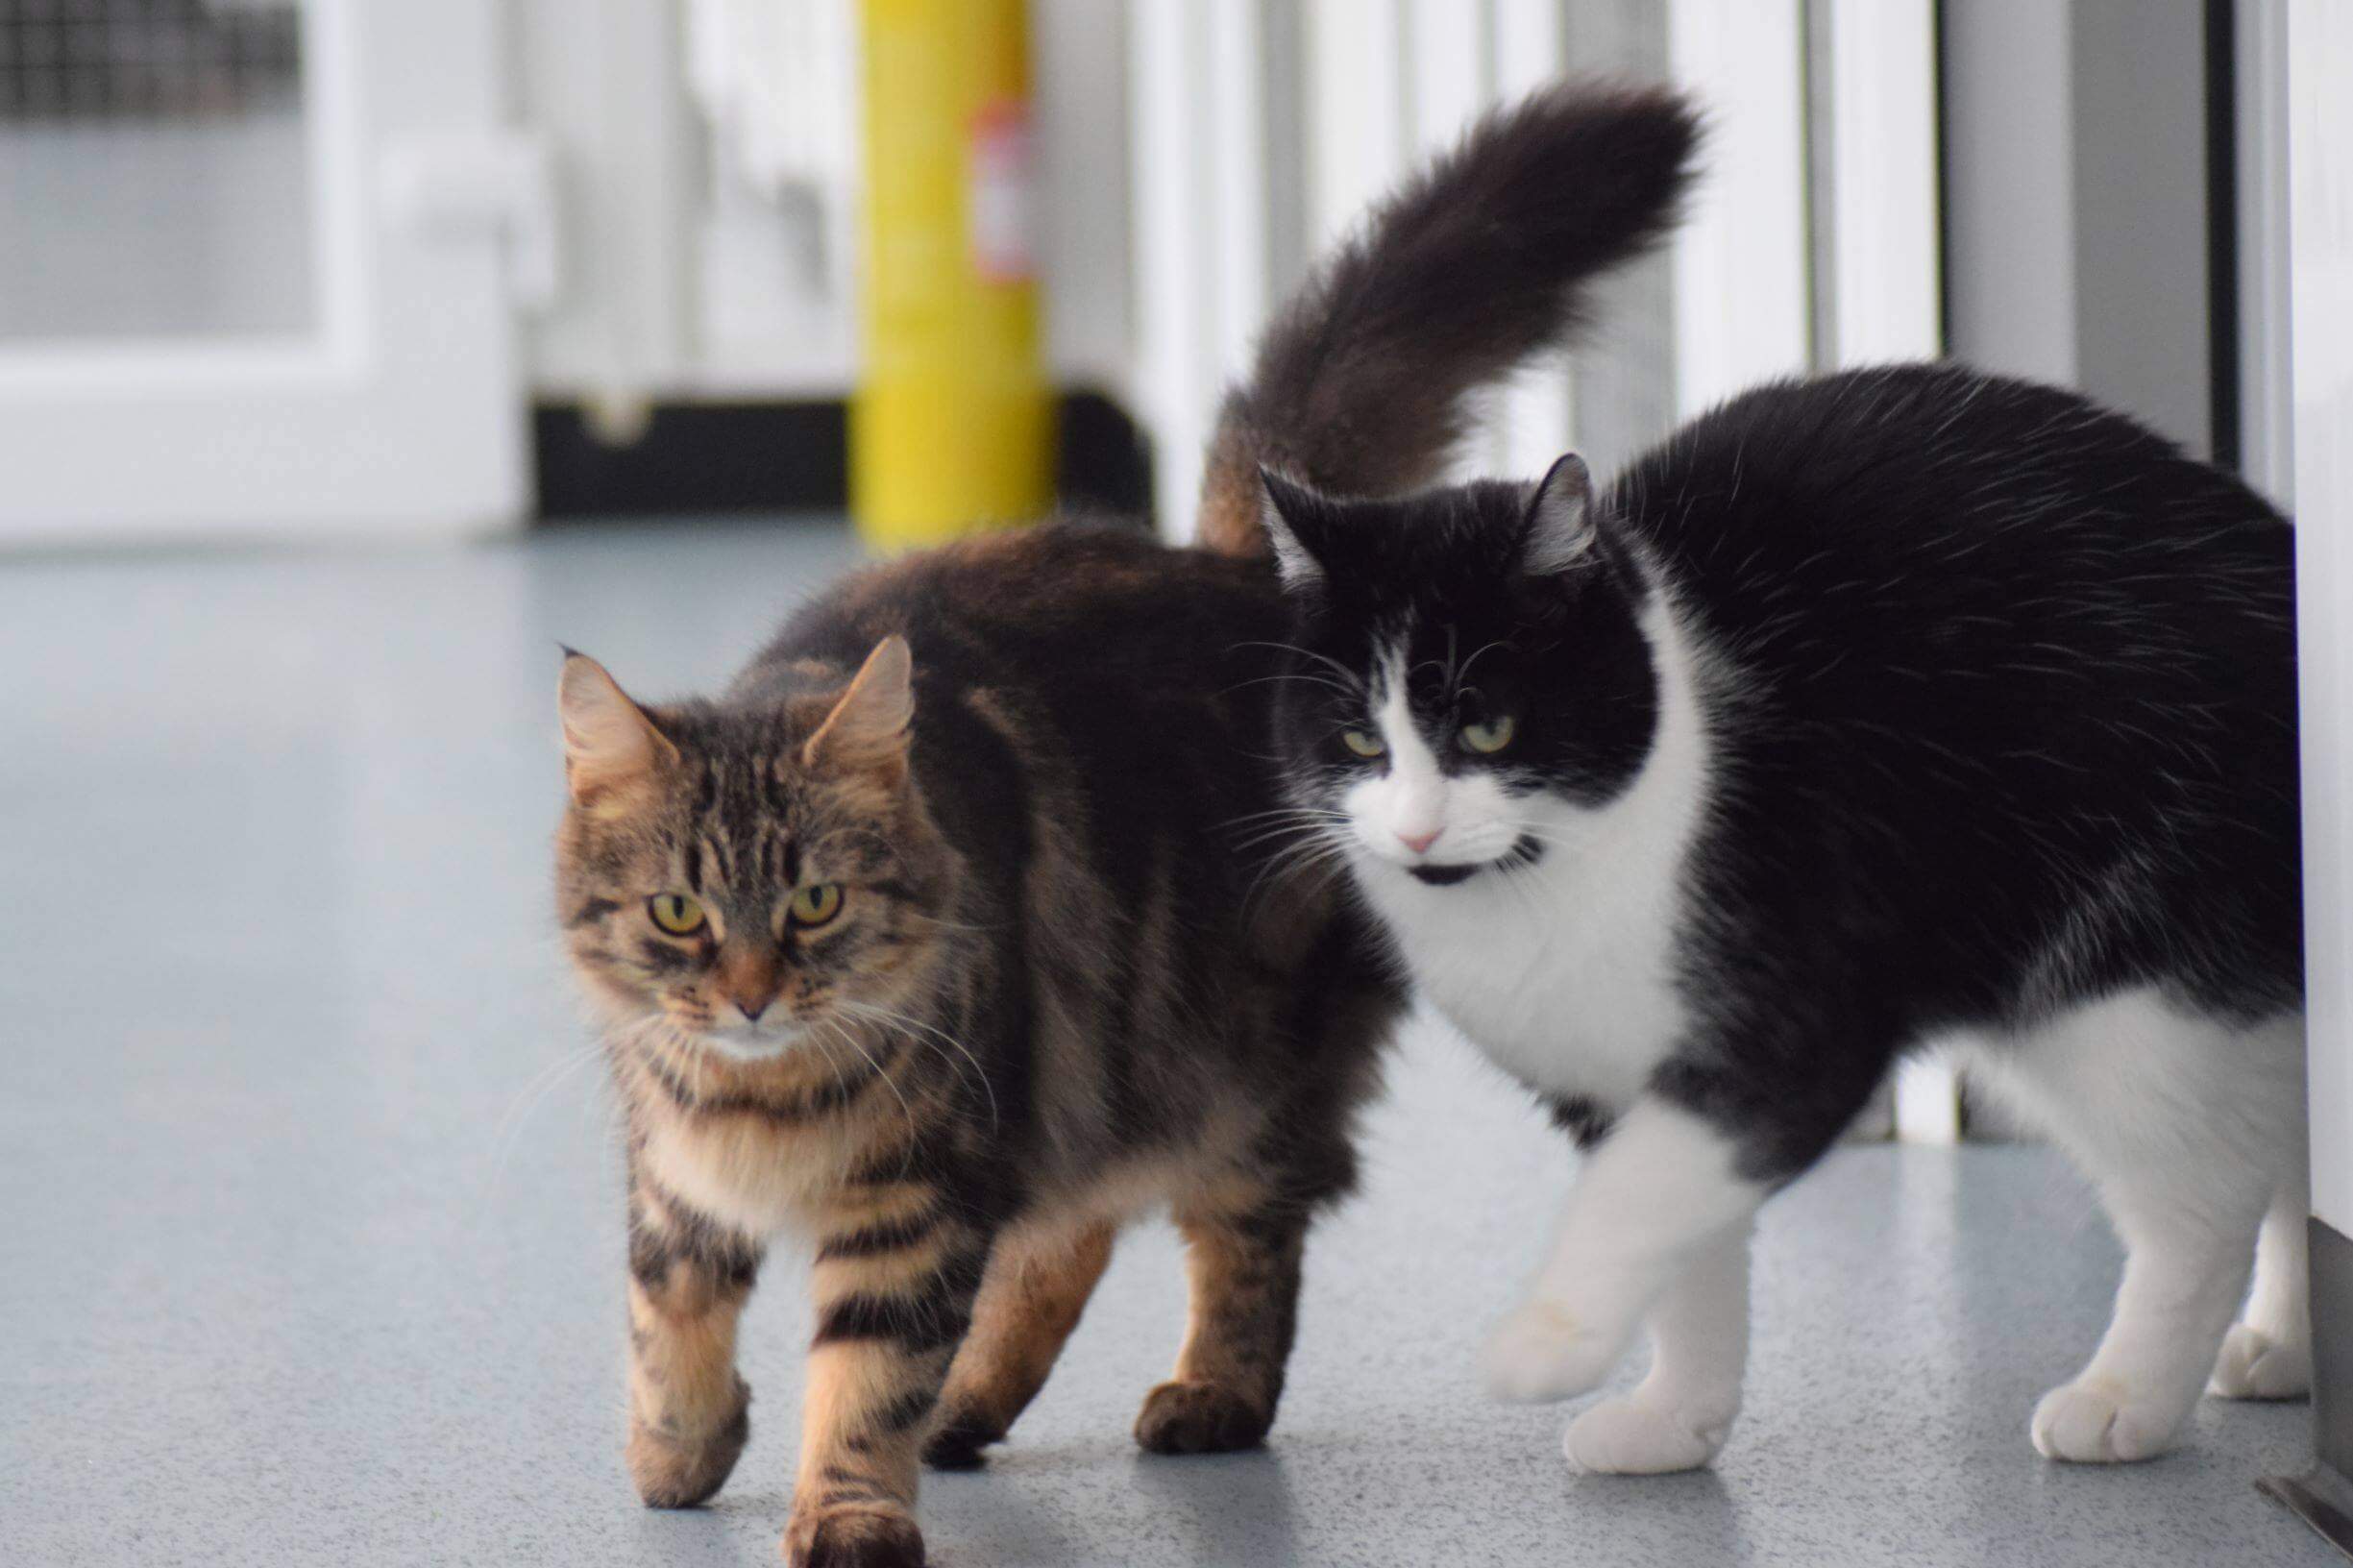 Mengawinkan Kucing Baru Kenal | Mempertemukan Kucing Kembali